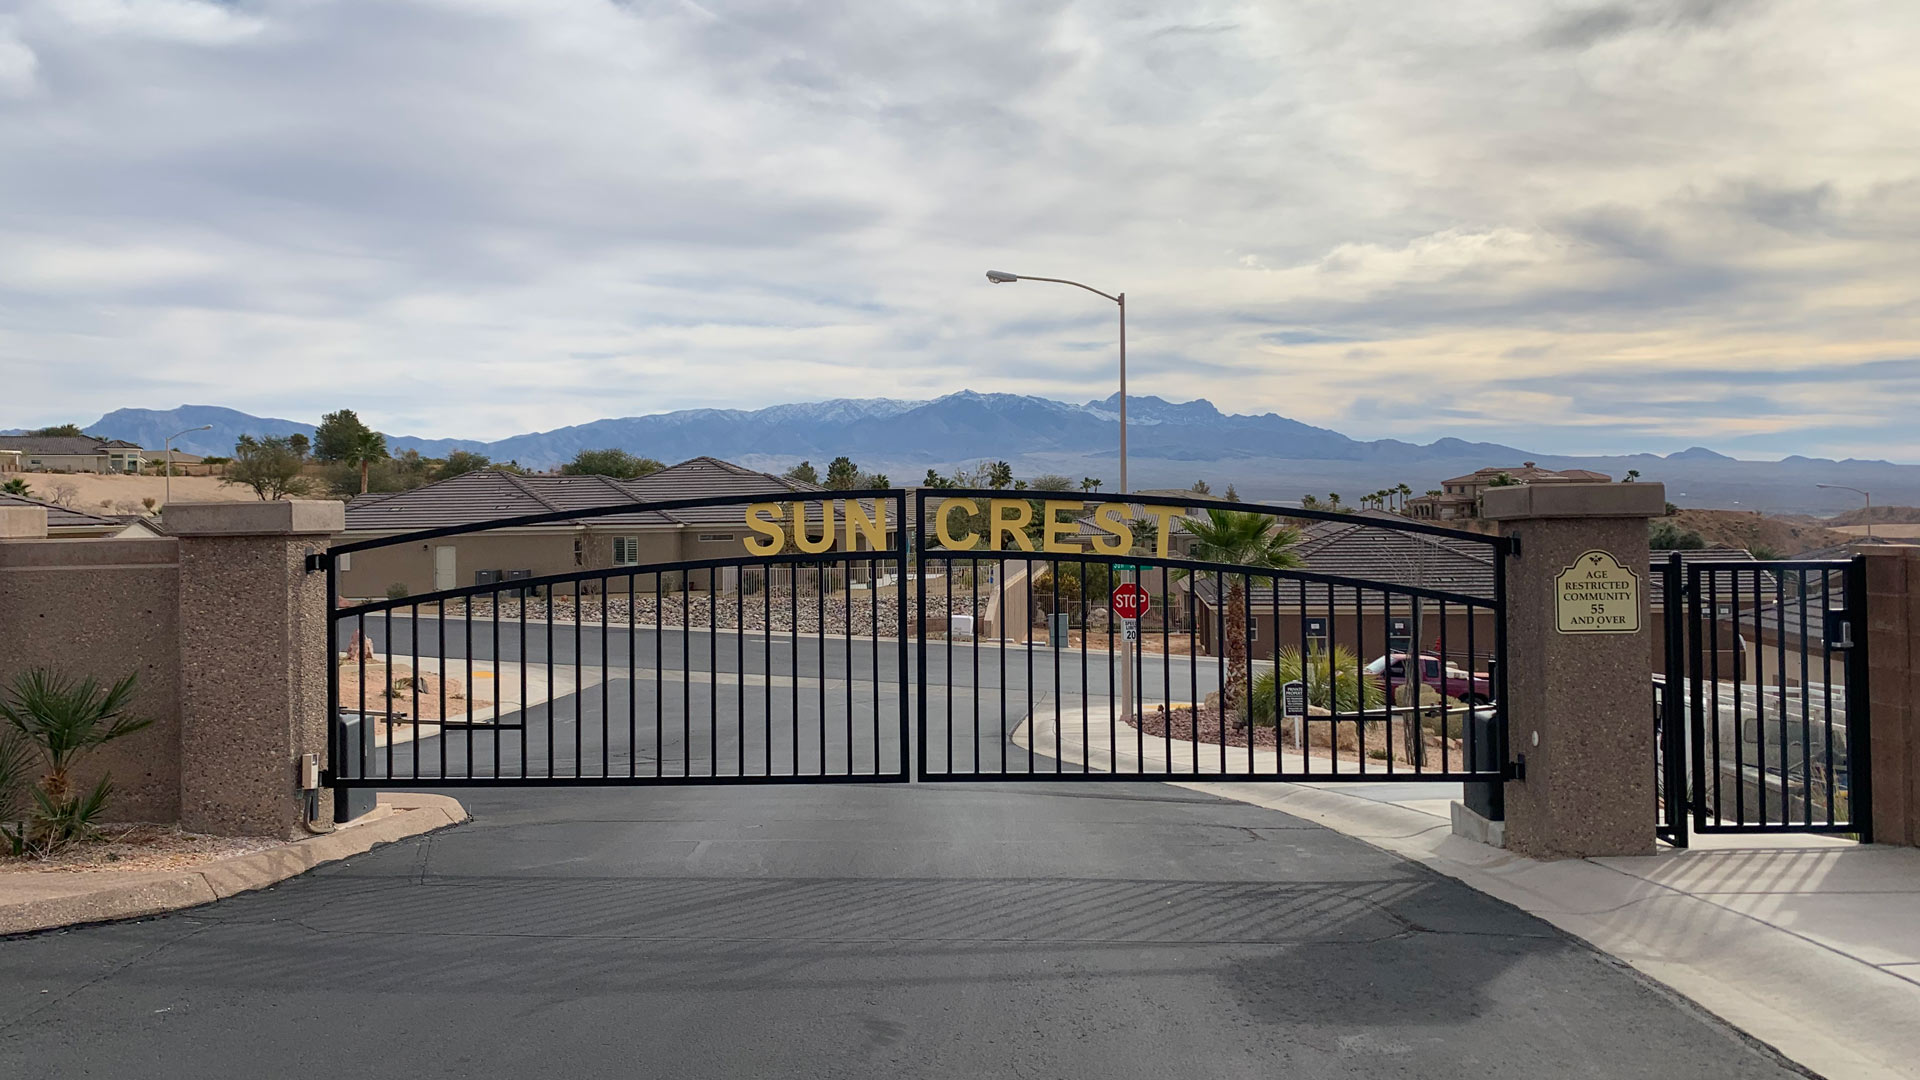 Sun Crest Mesquite Nevada 55+ community